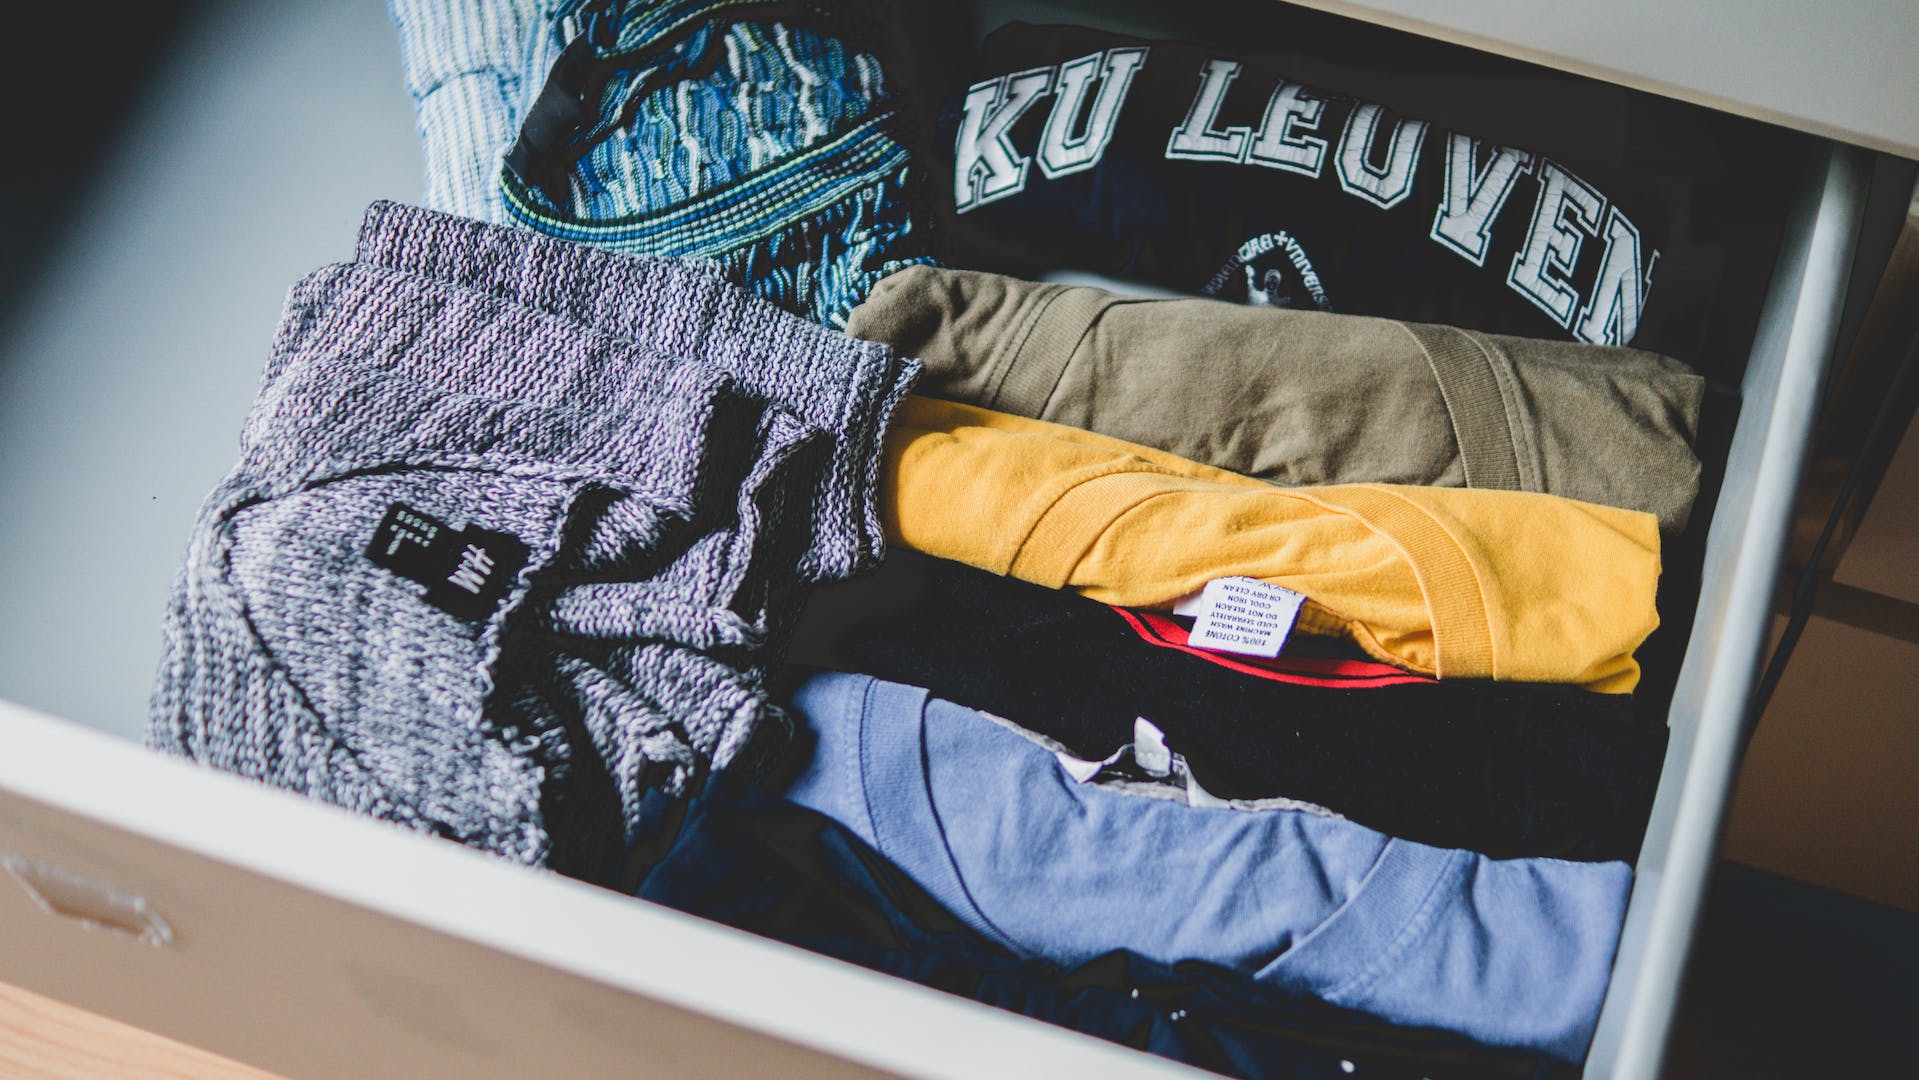 Chemises colorées pliées placées dans un tiroir | Source : Pexels